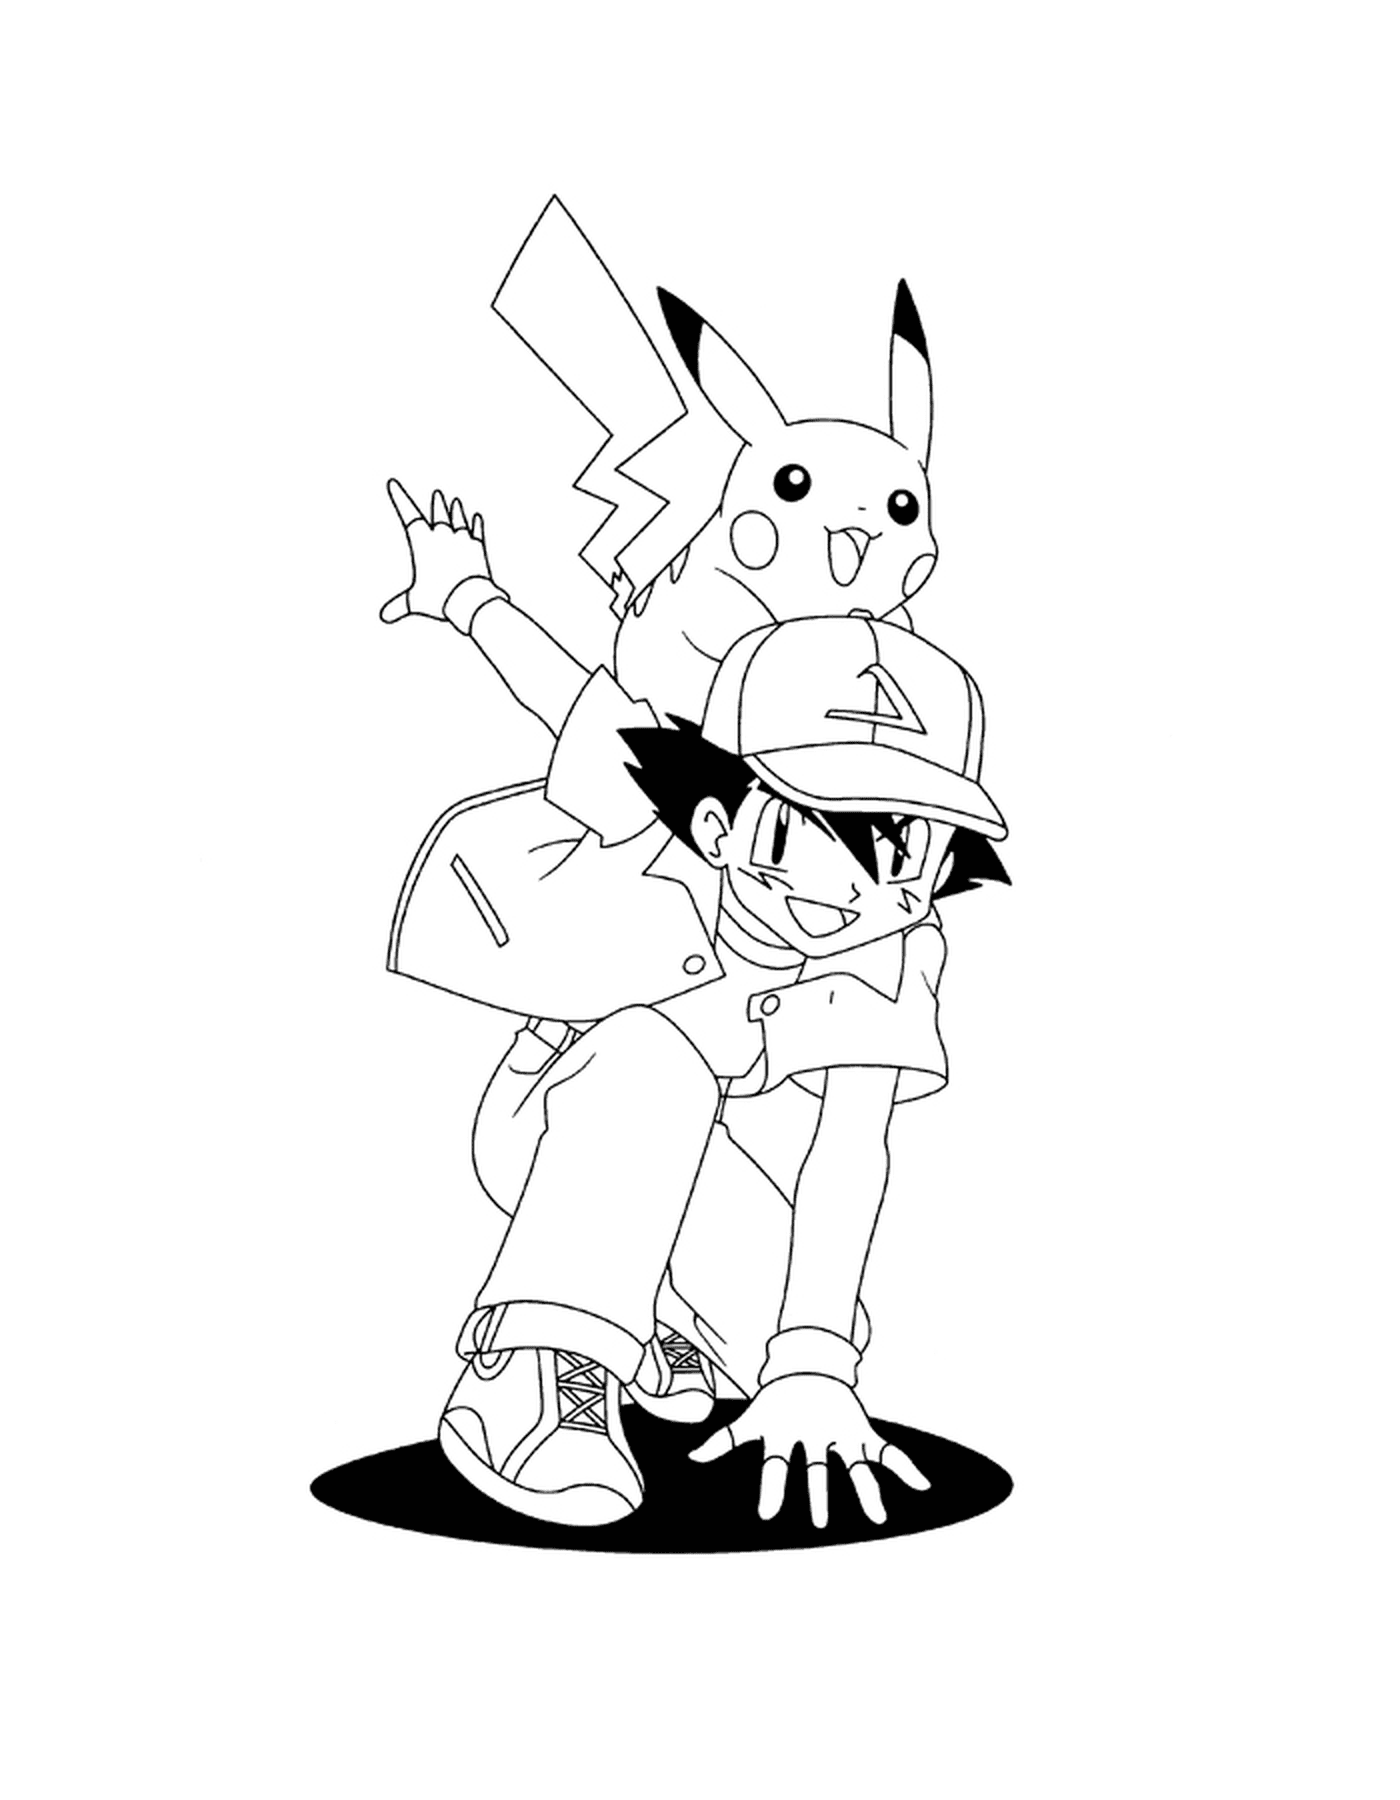  Sacha carregando Pikachu nas costas 